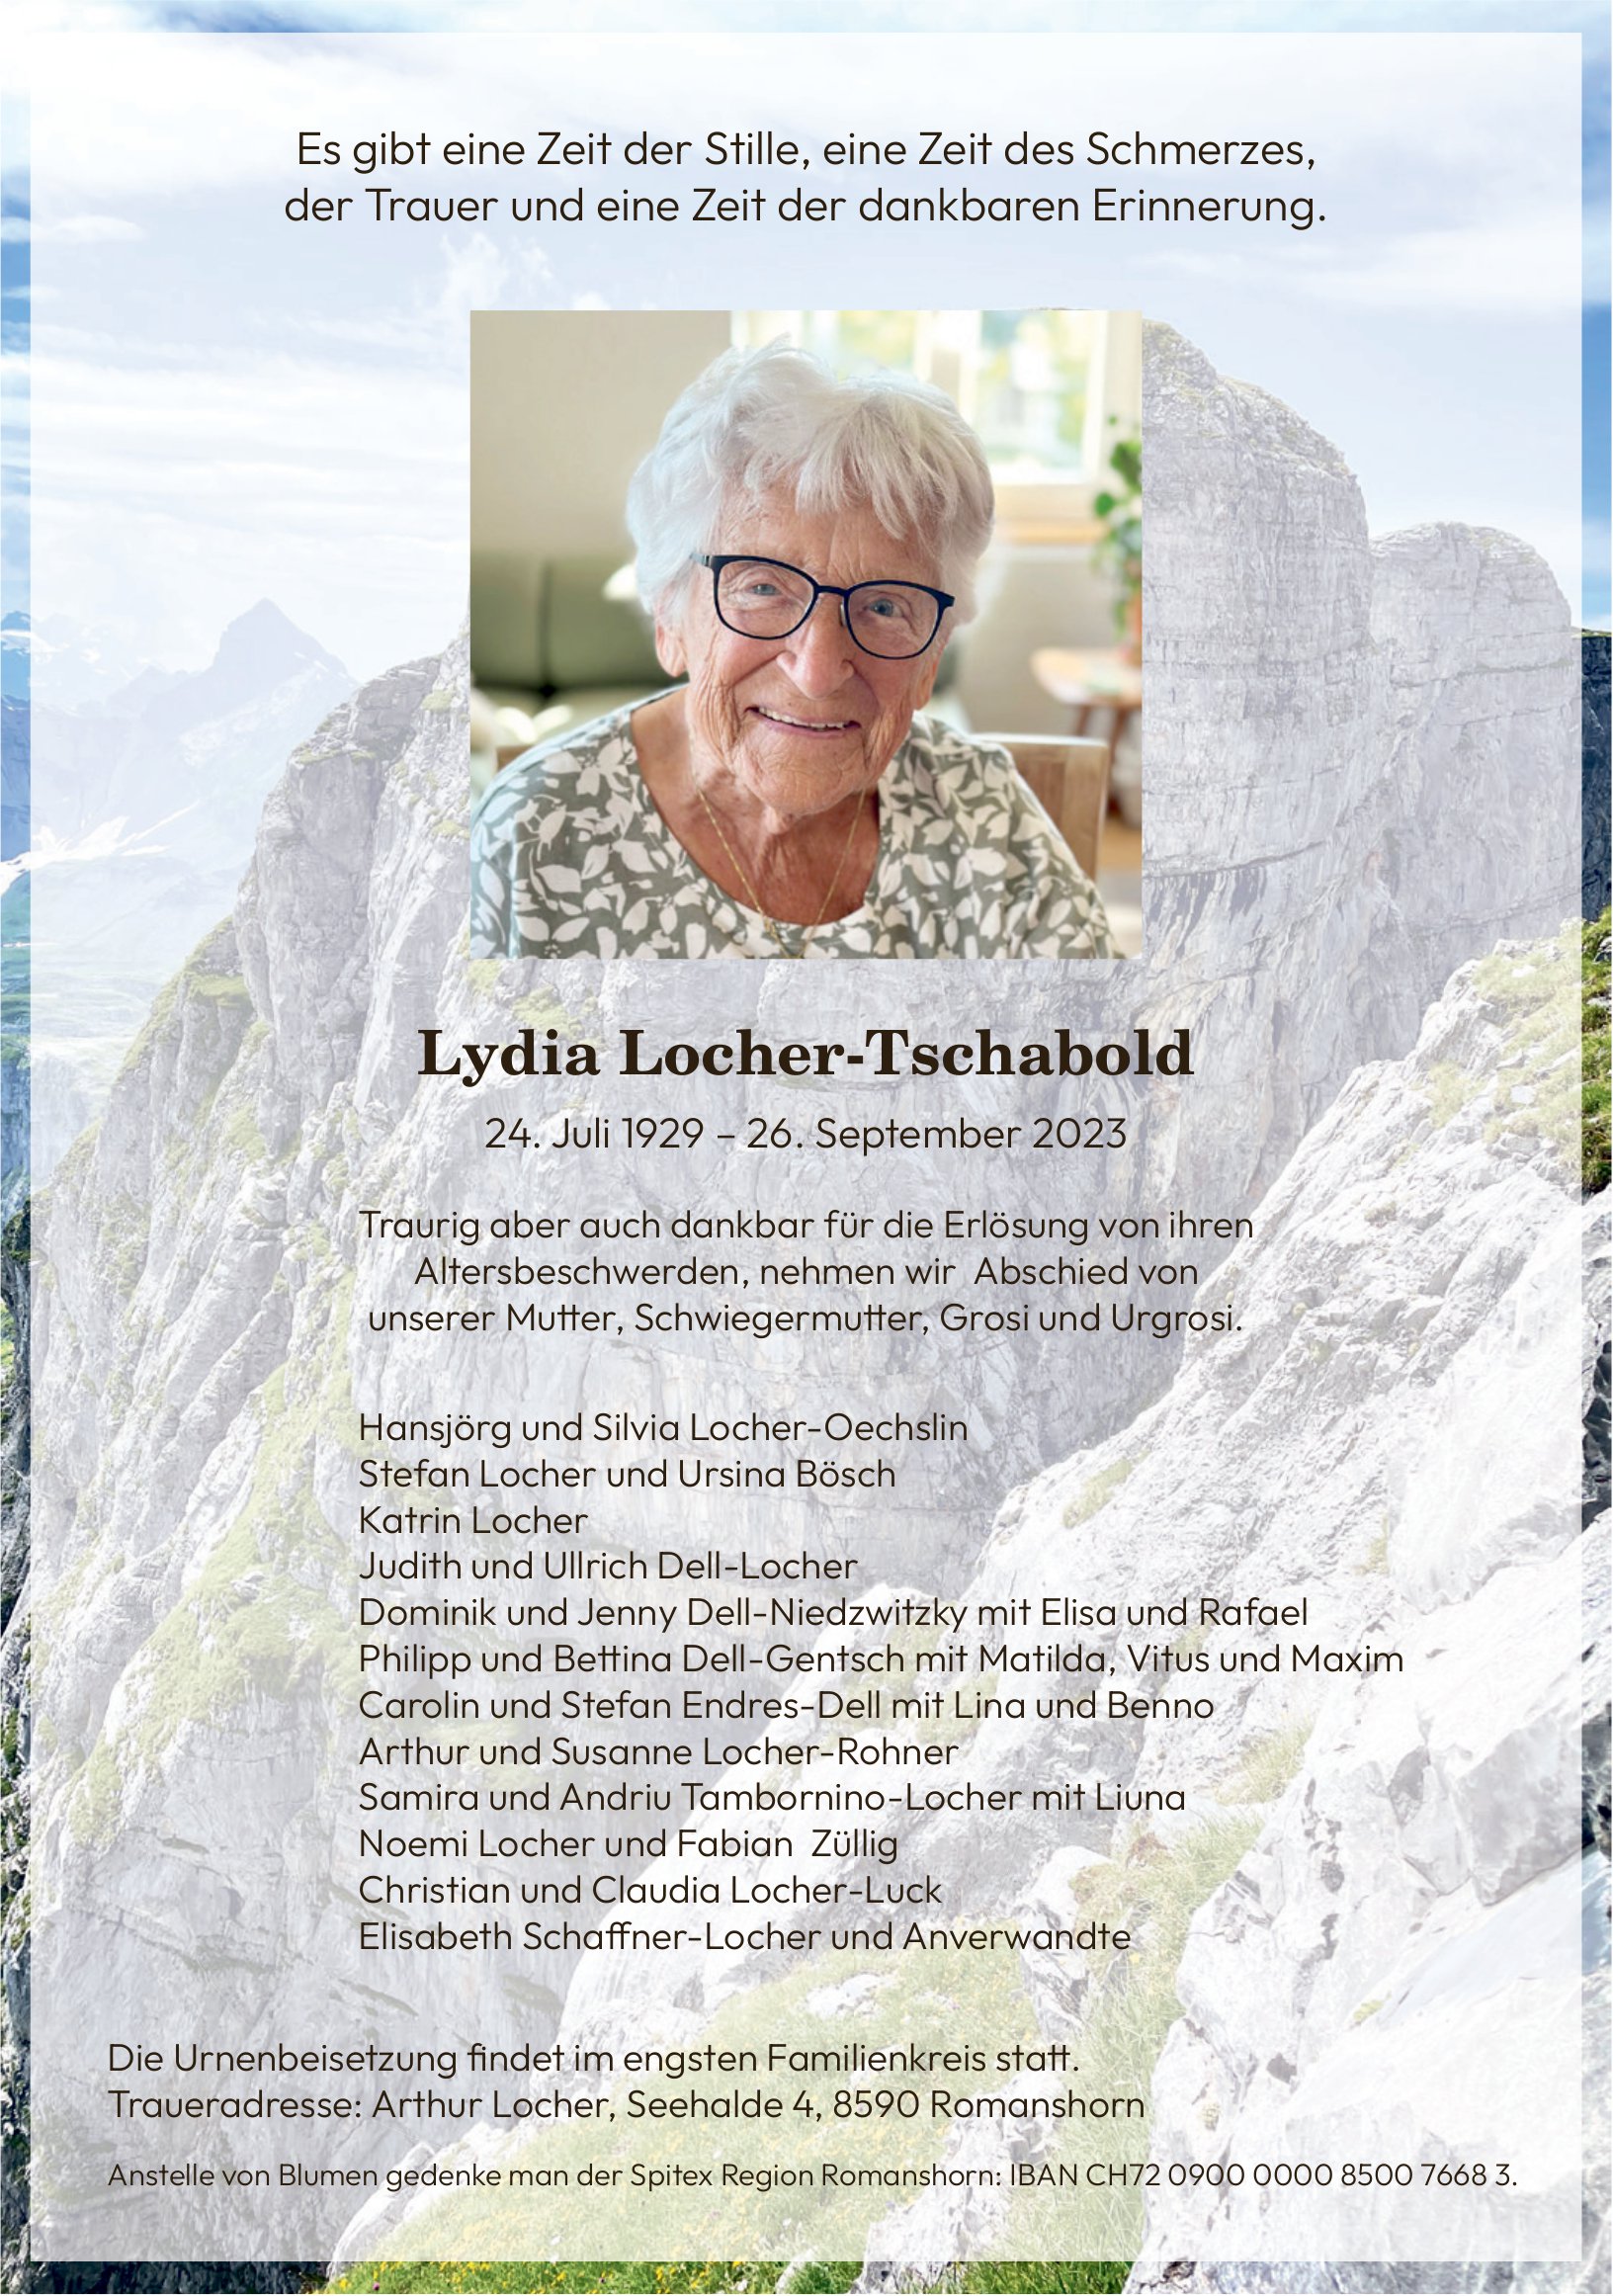 Lydia Locher-Tschabold, September 2023 / TA